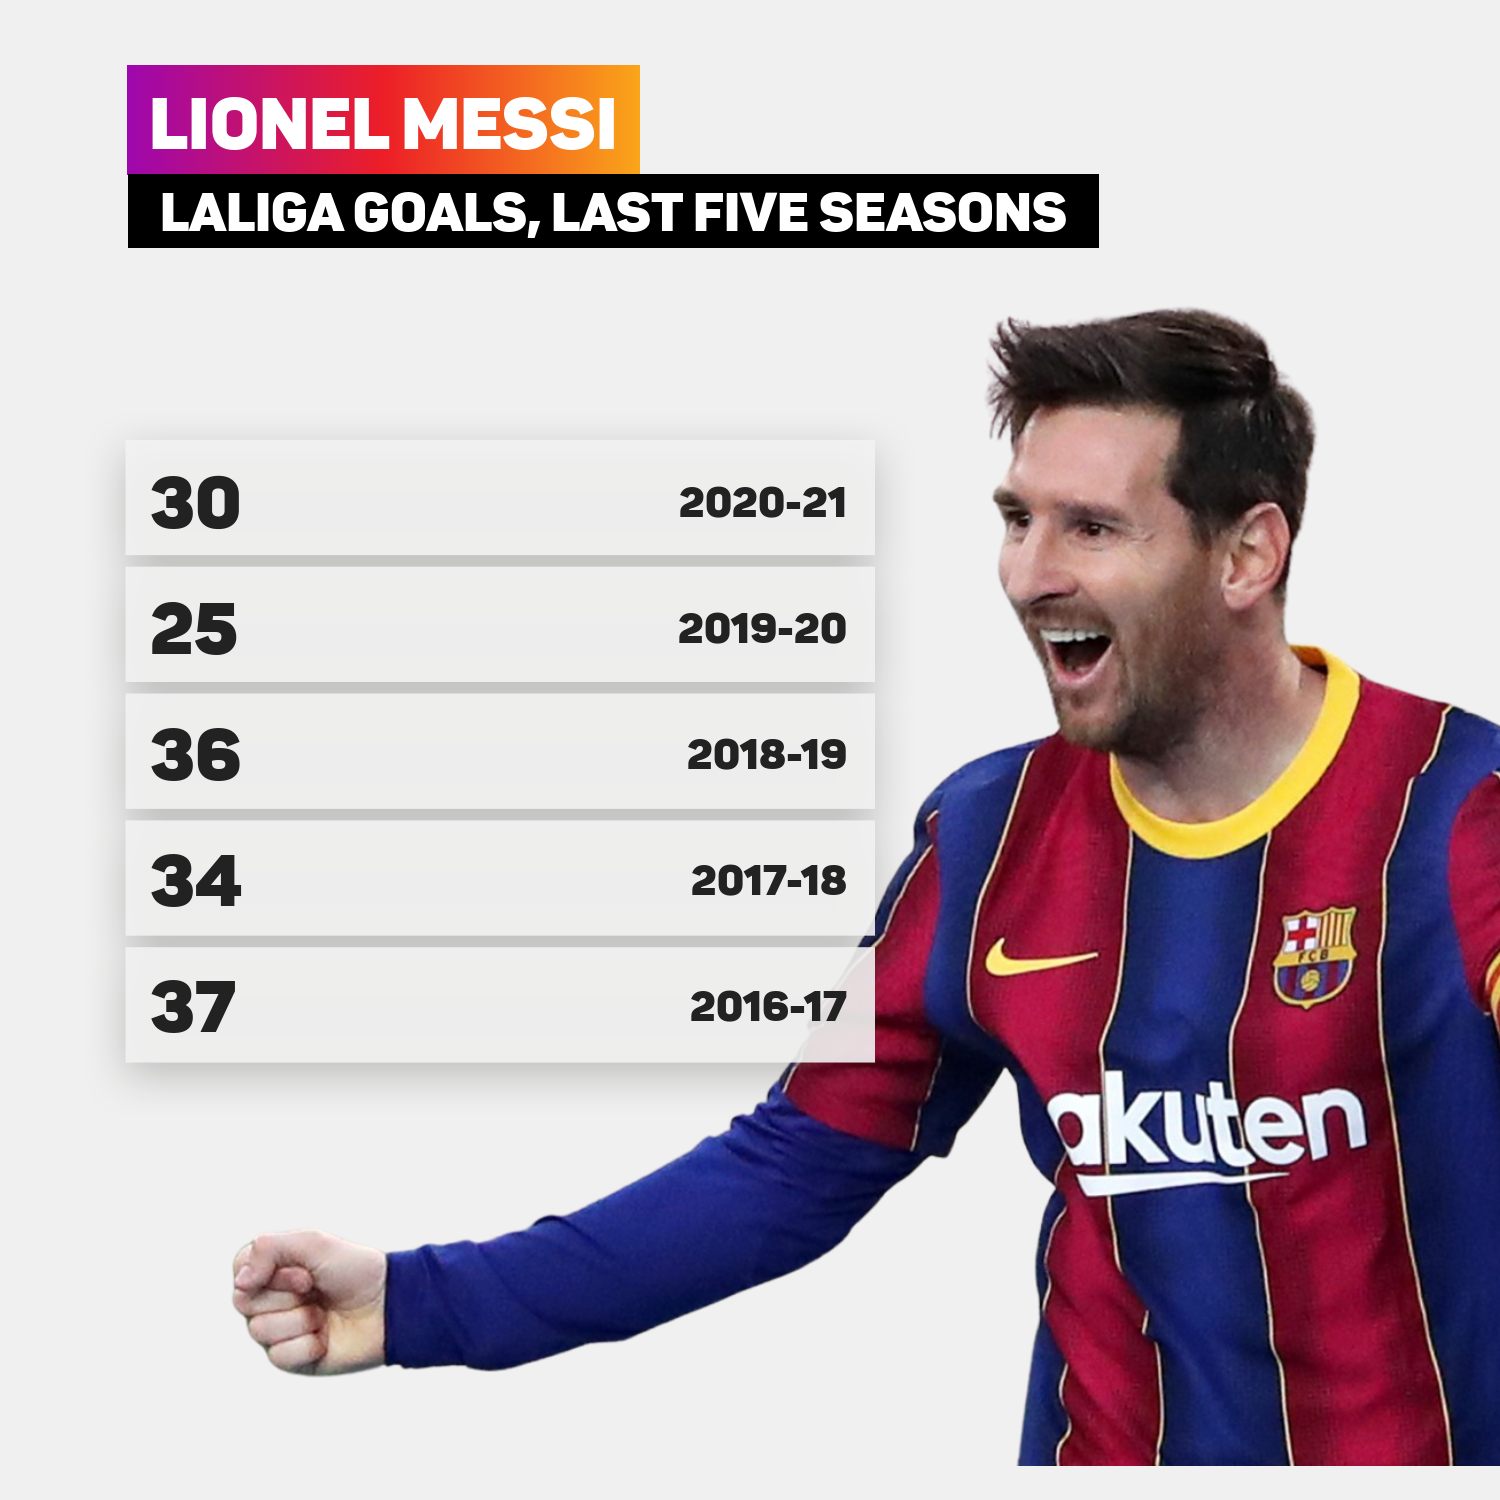 Lionel Messi's LaLiga goals since 2016-17